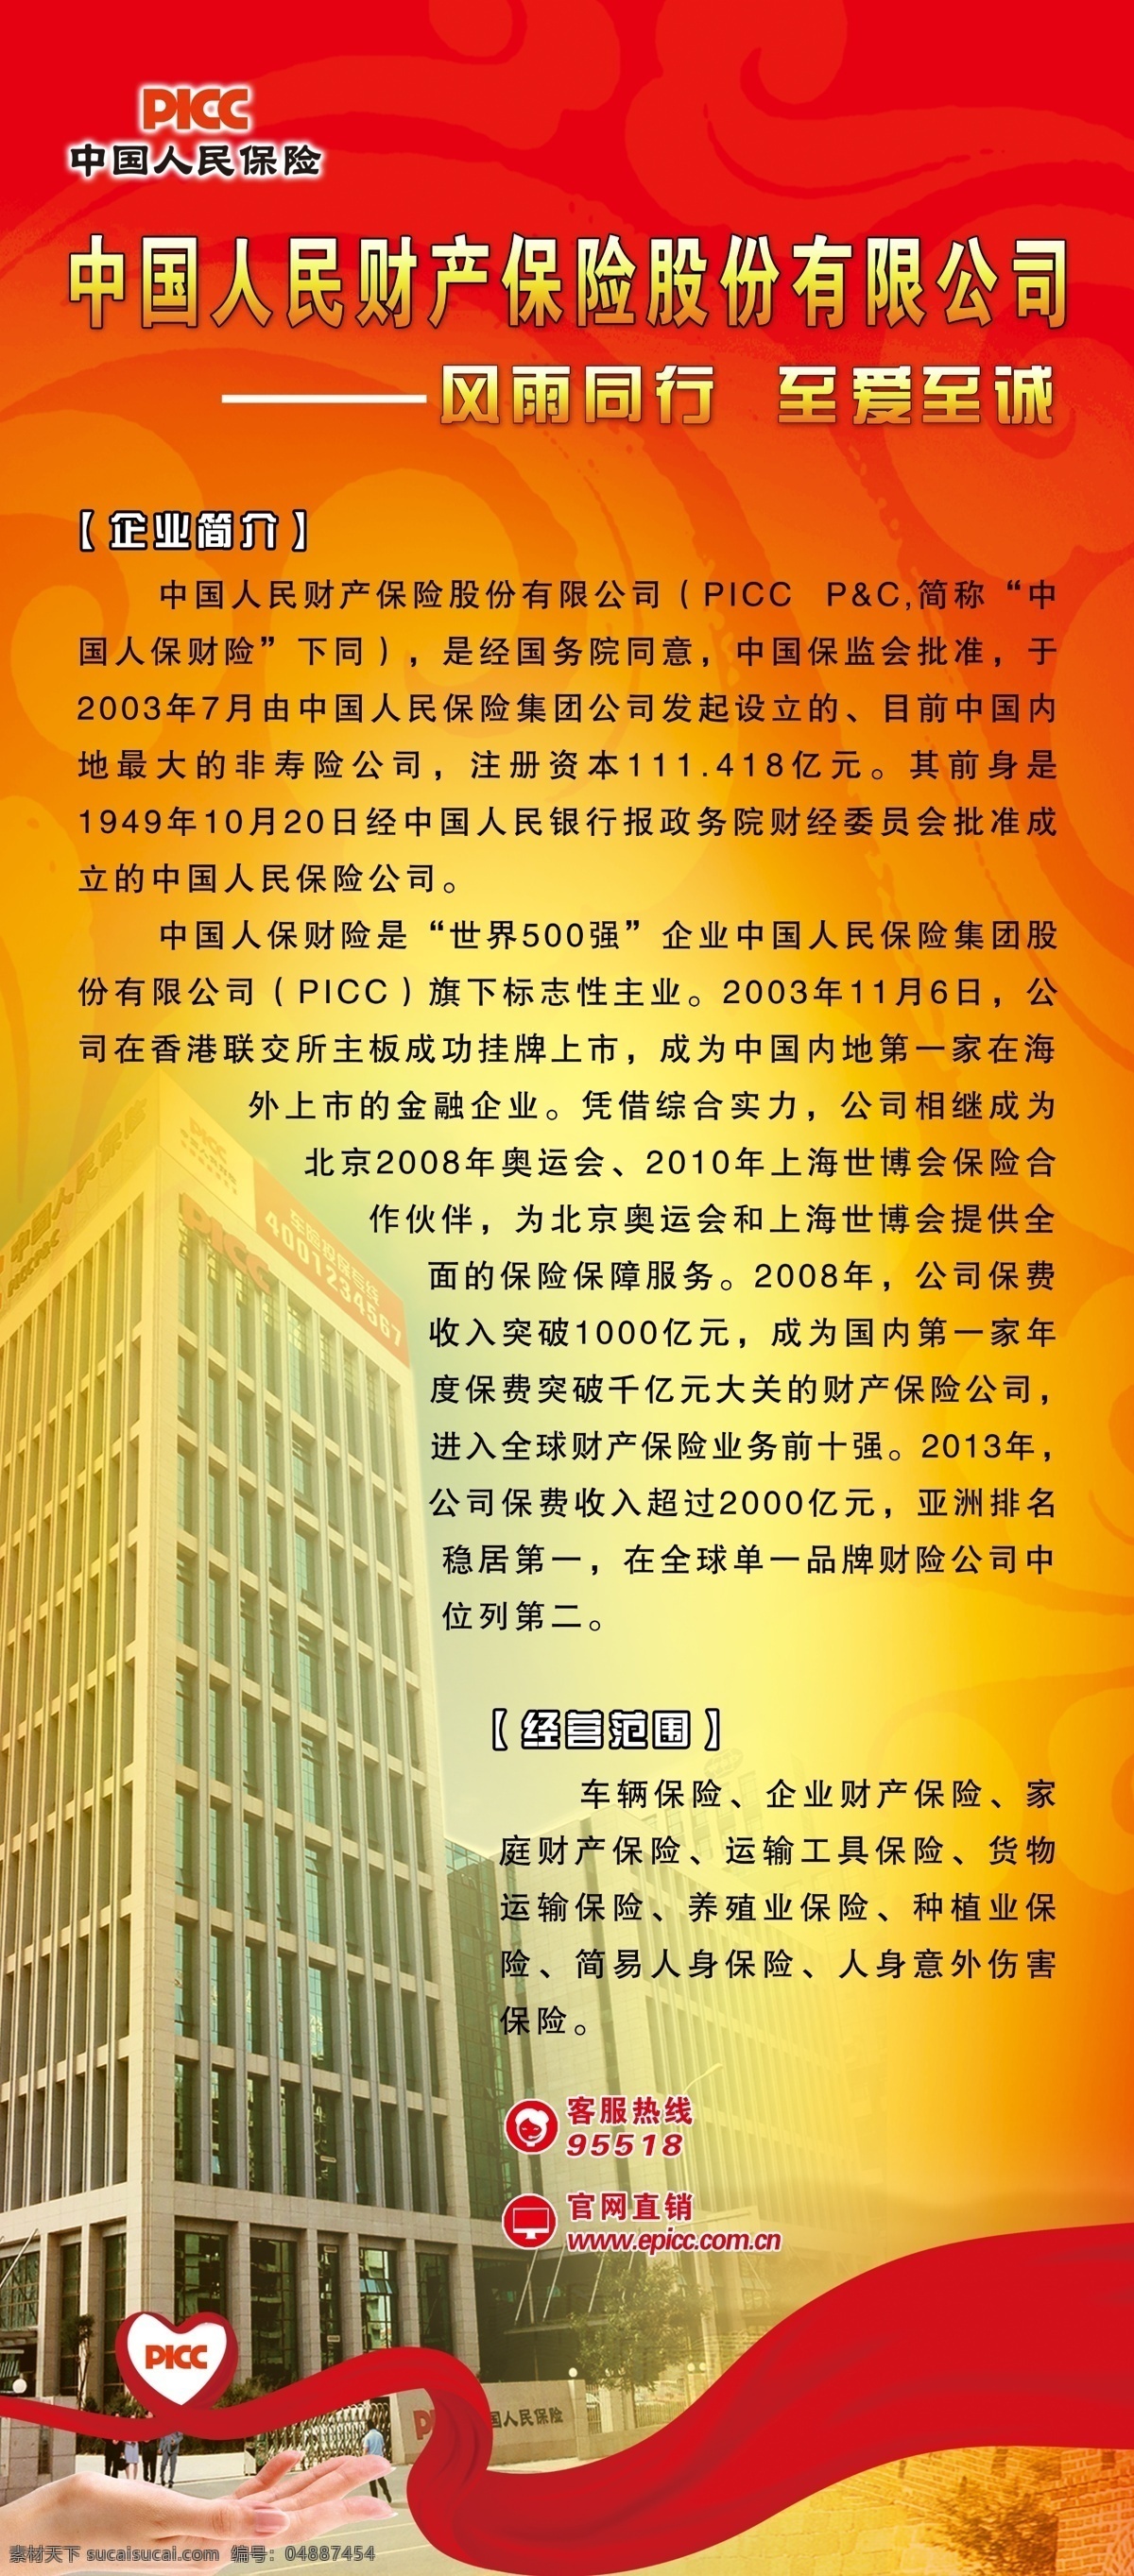 展架 中国人民保险 人保大楼 红丝带 黄色